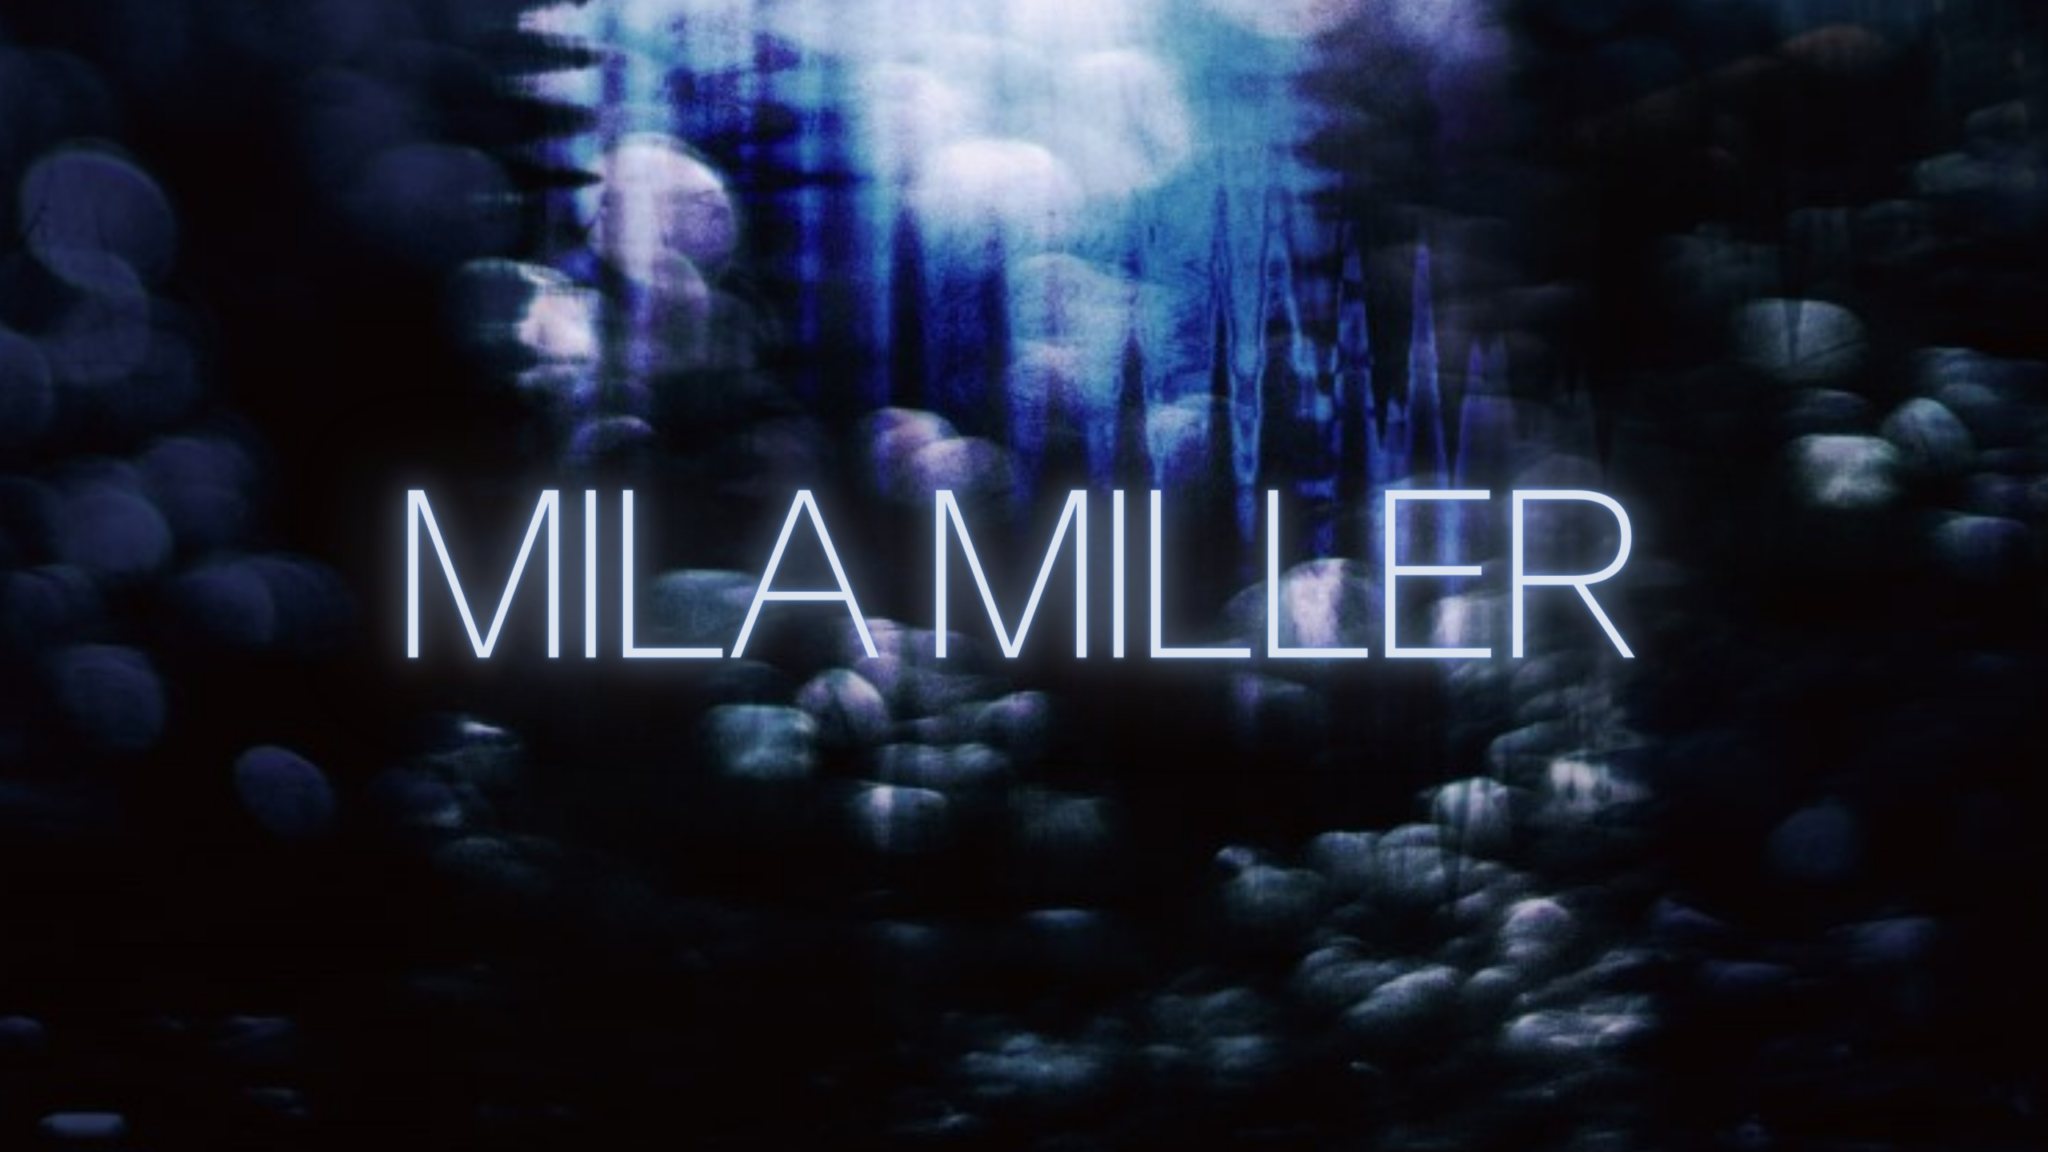 Mila Miller